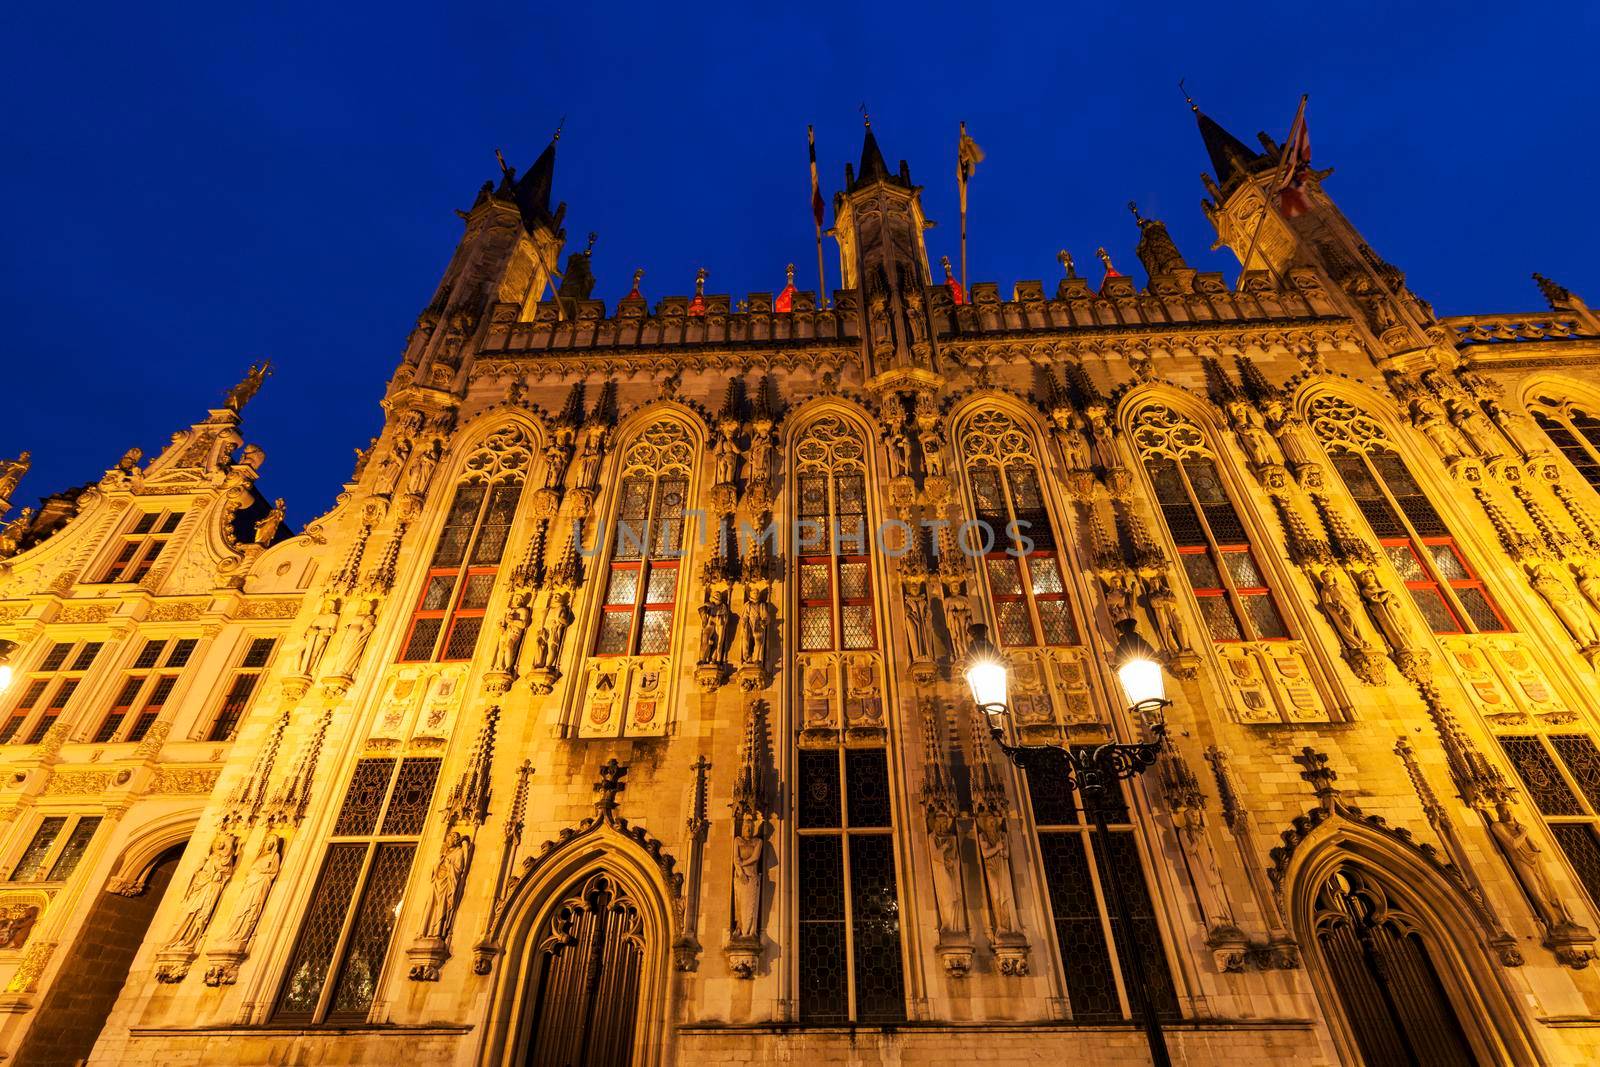 Bruges City Hall on Burg Square. Bruges, Flemish Region, Belgium